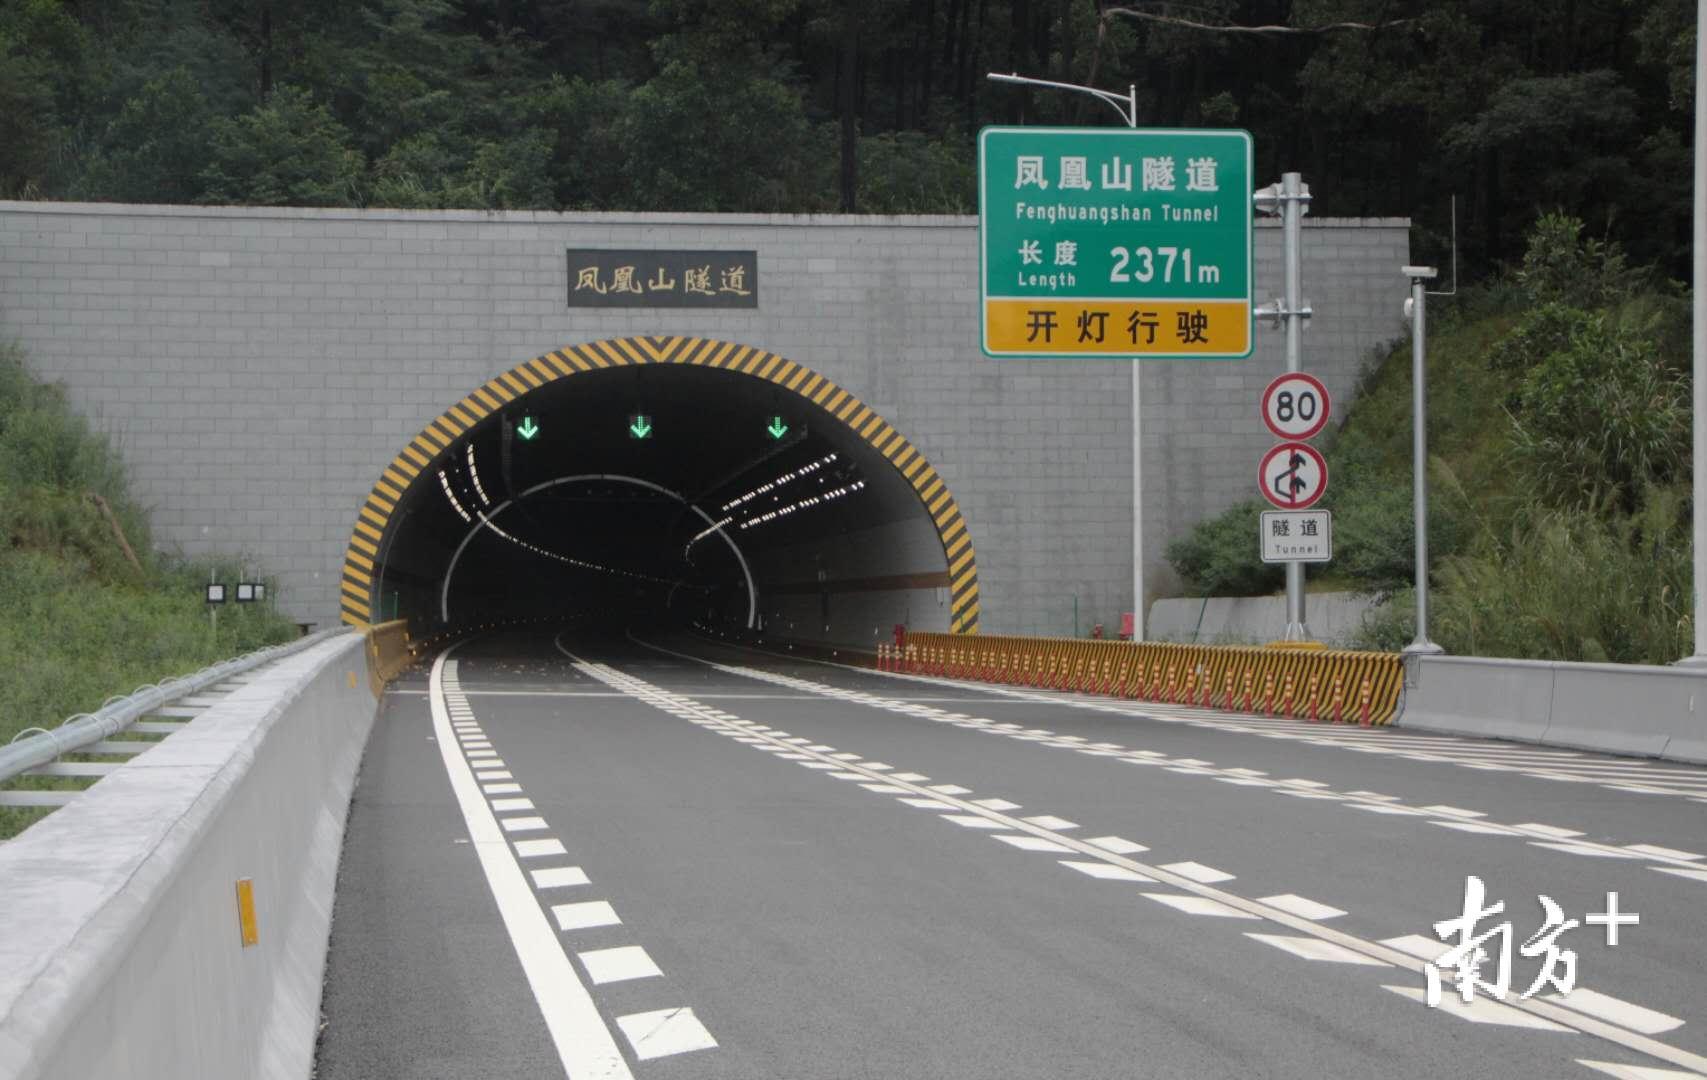 《公路隧道设计规范第二册交通工程与附属设施》JTGD70/2-2014【影印版】_SOSOARCH